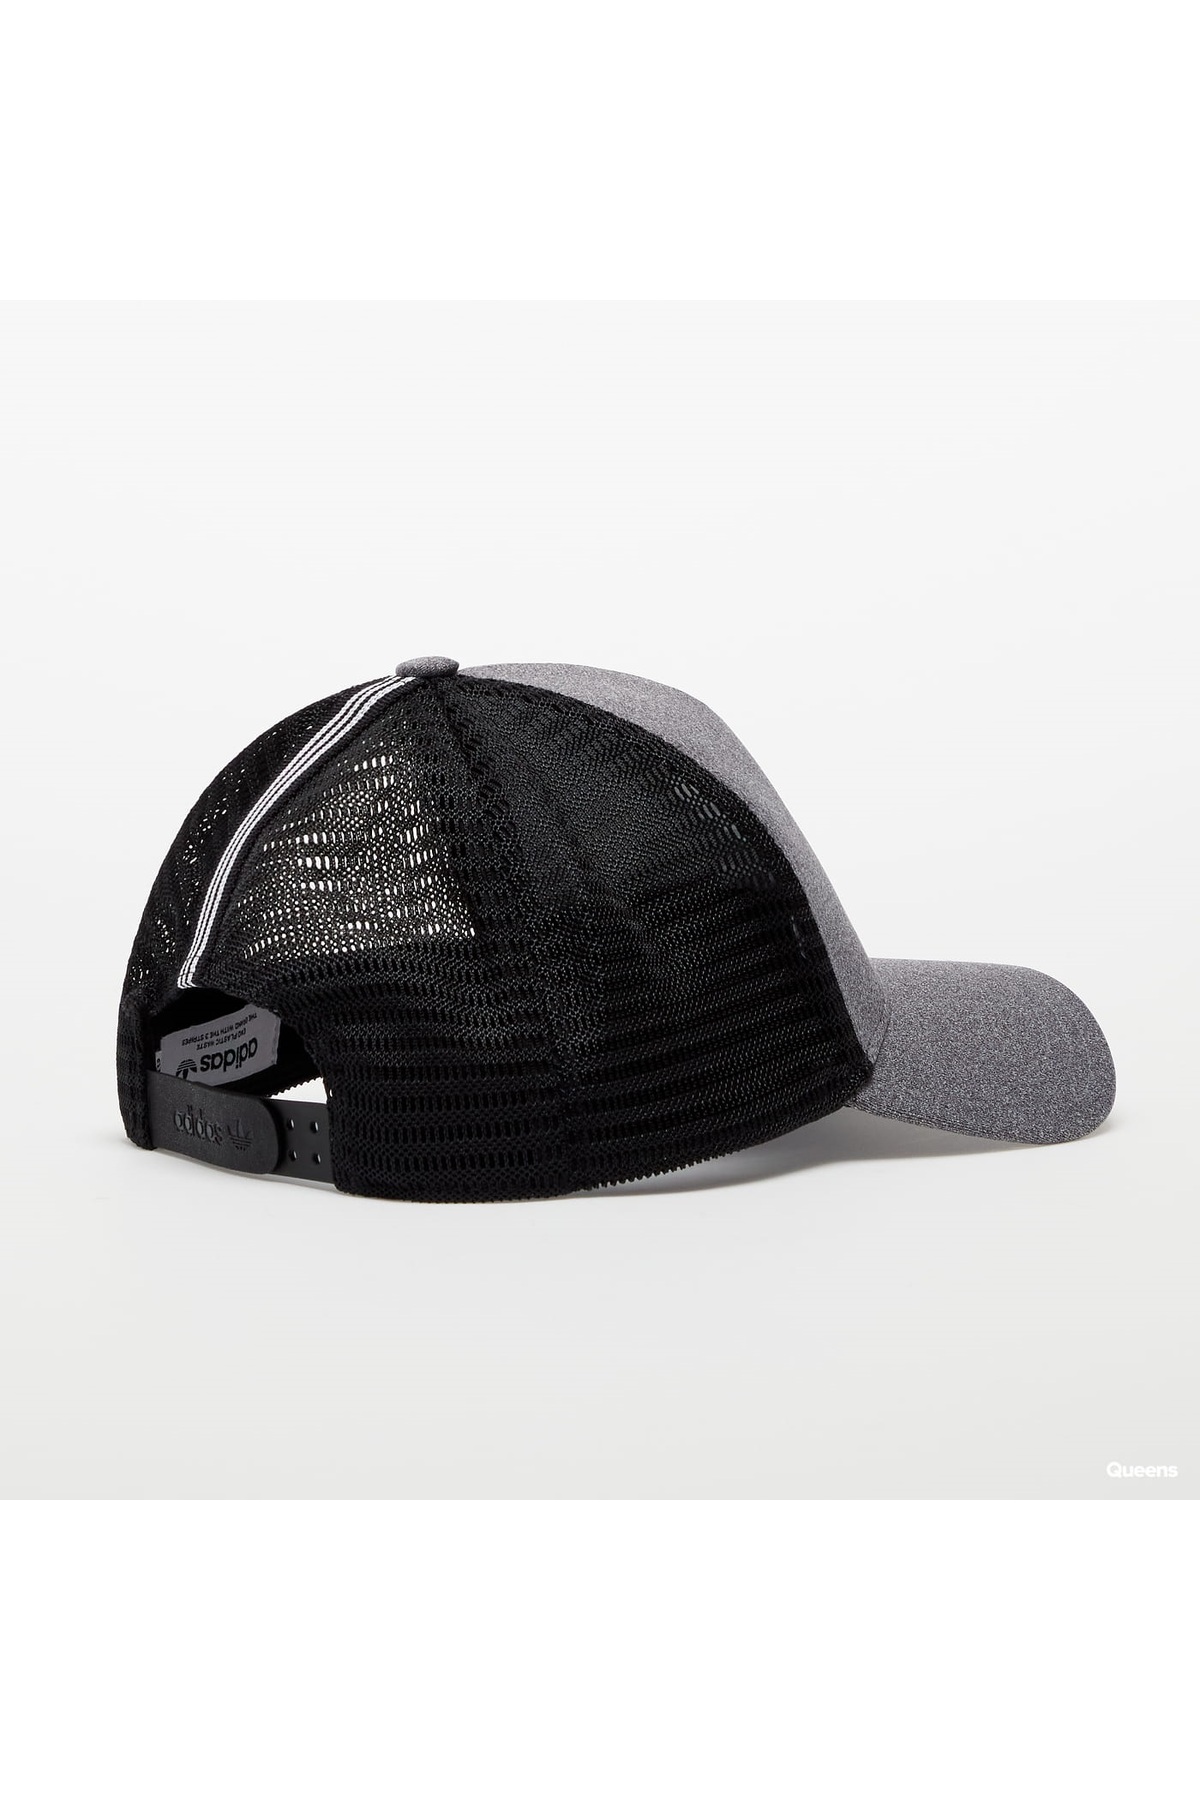 adidas کلاه یونیسکس HM1698